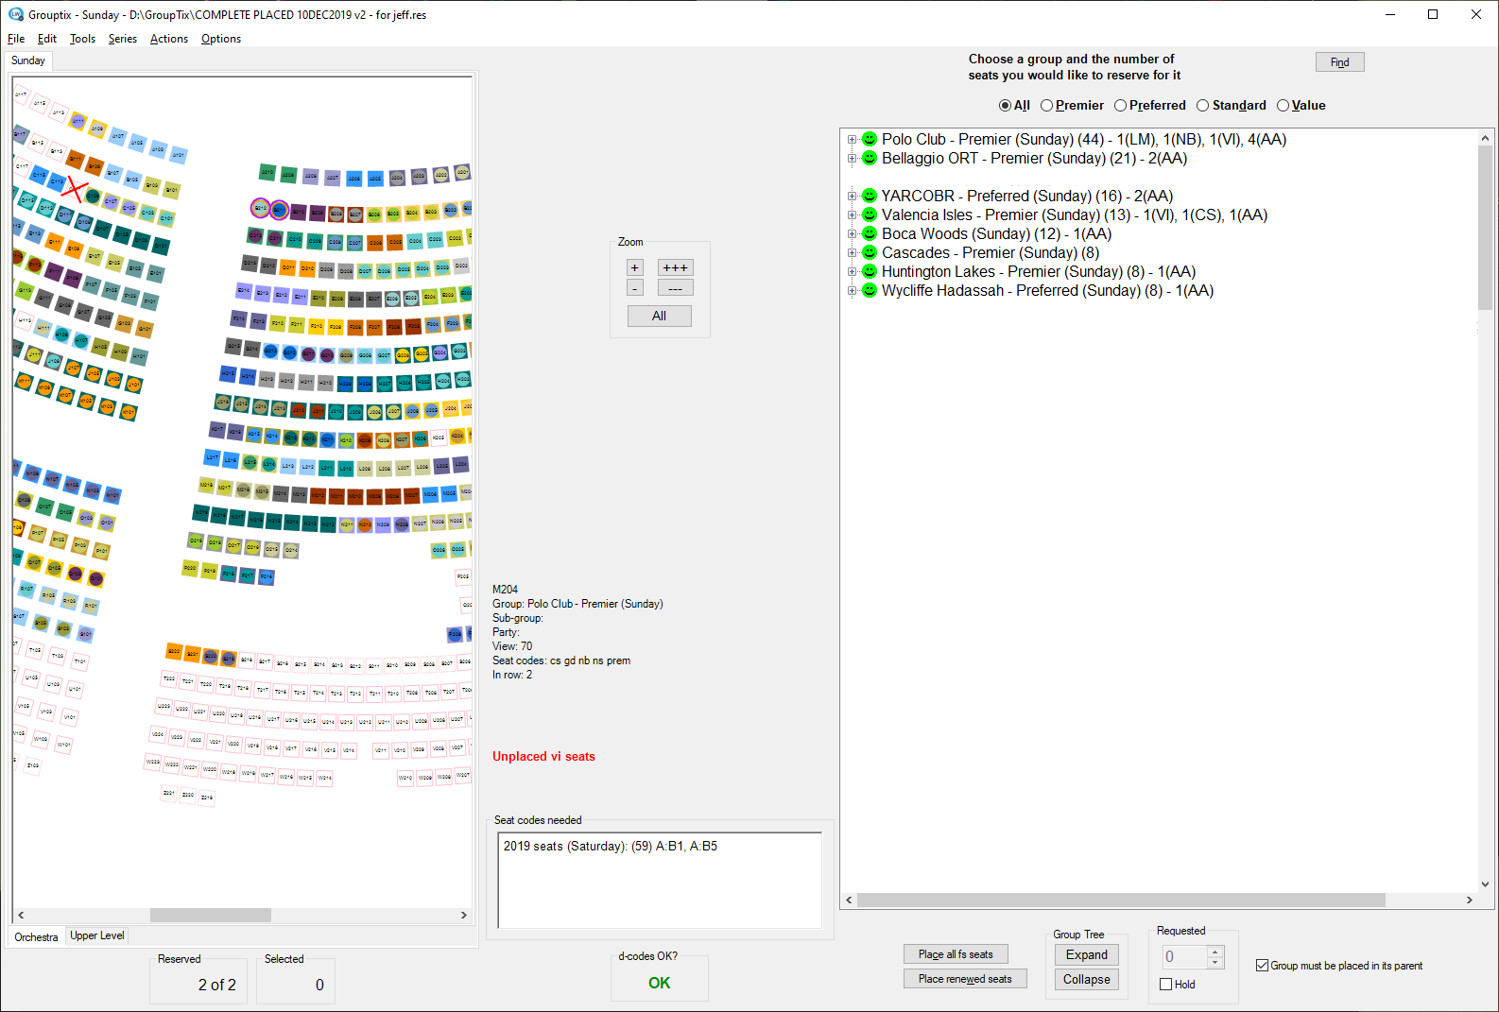 Seating GUI screen shot